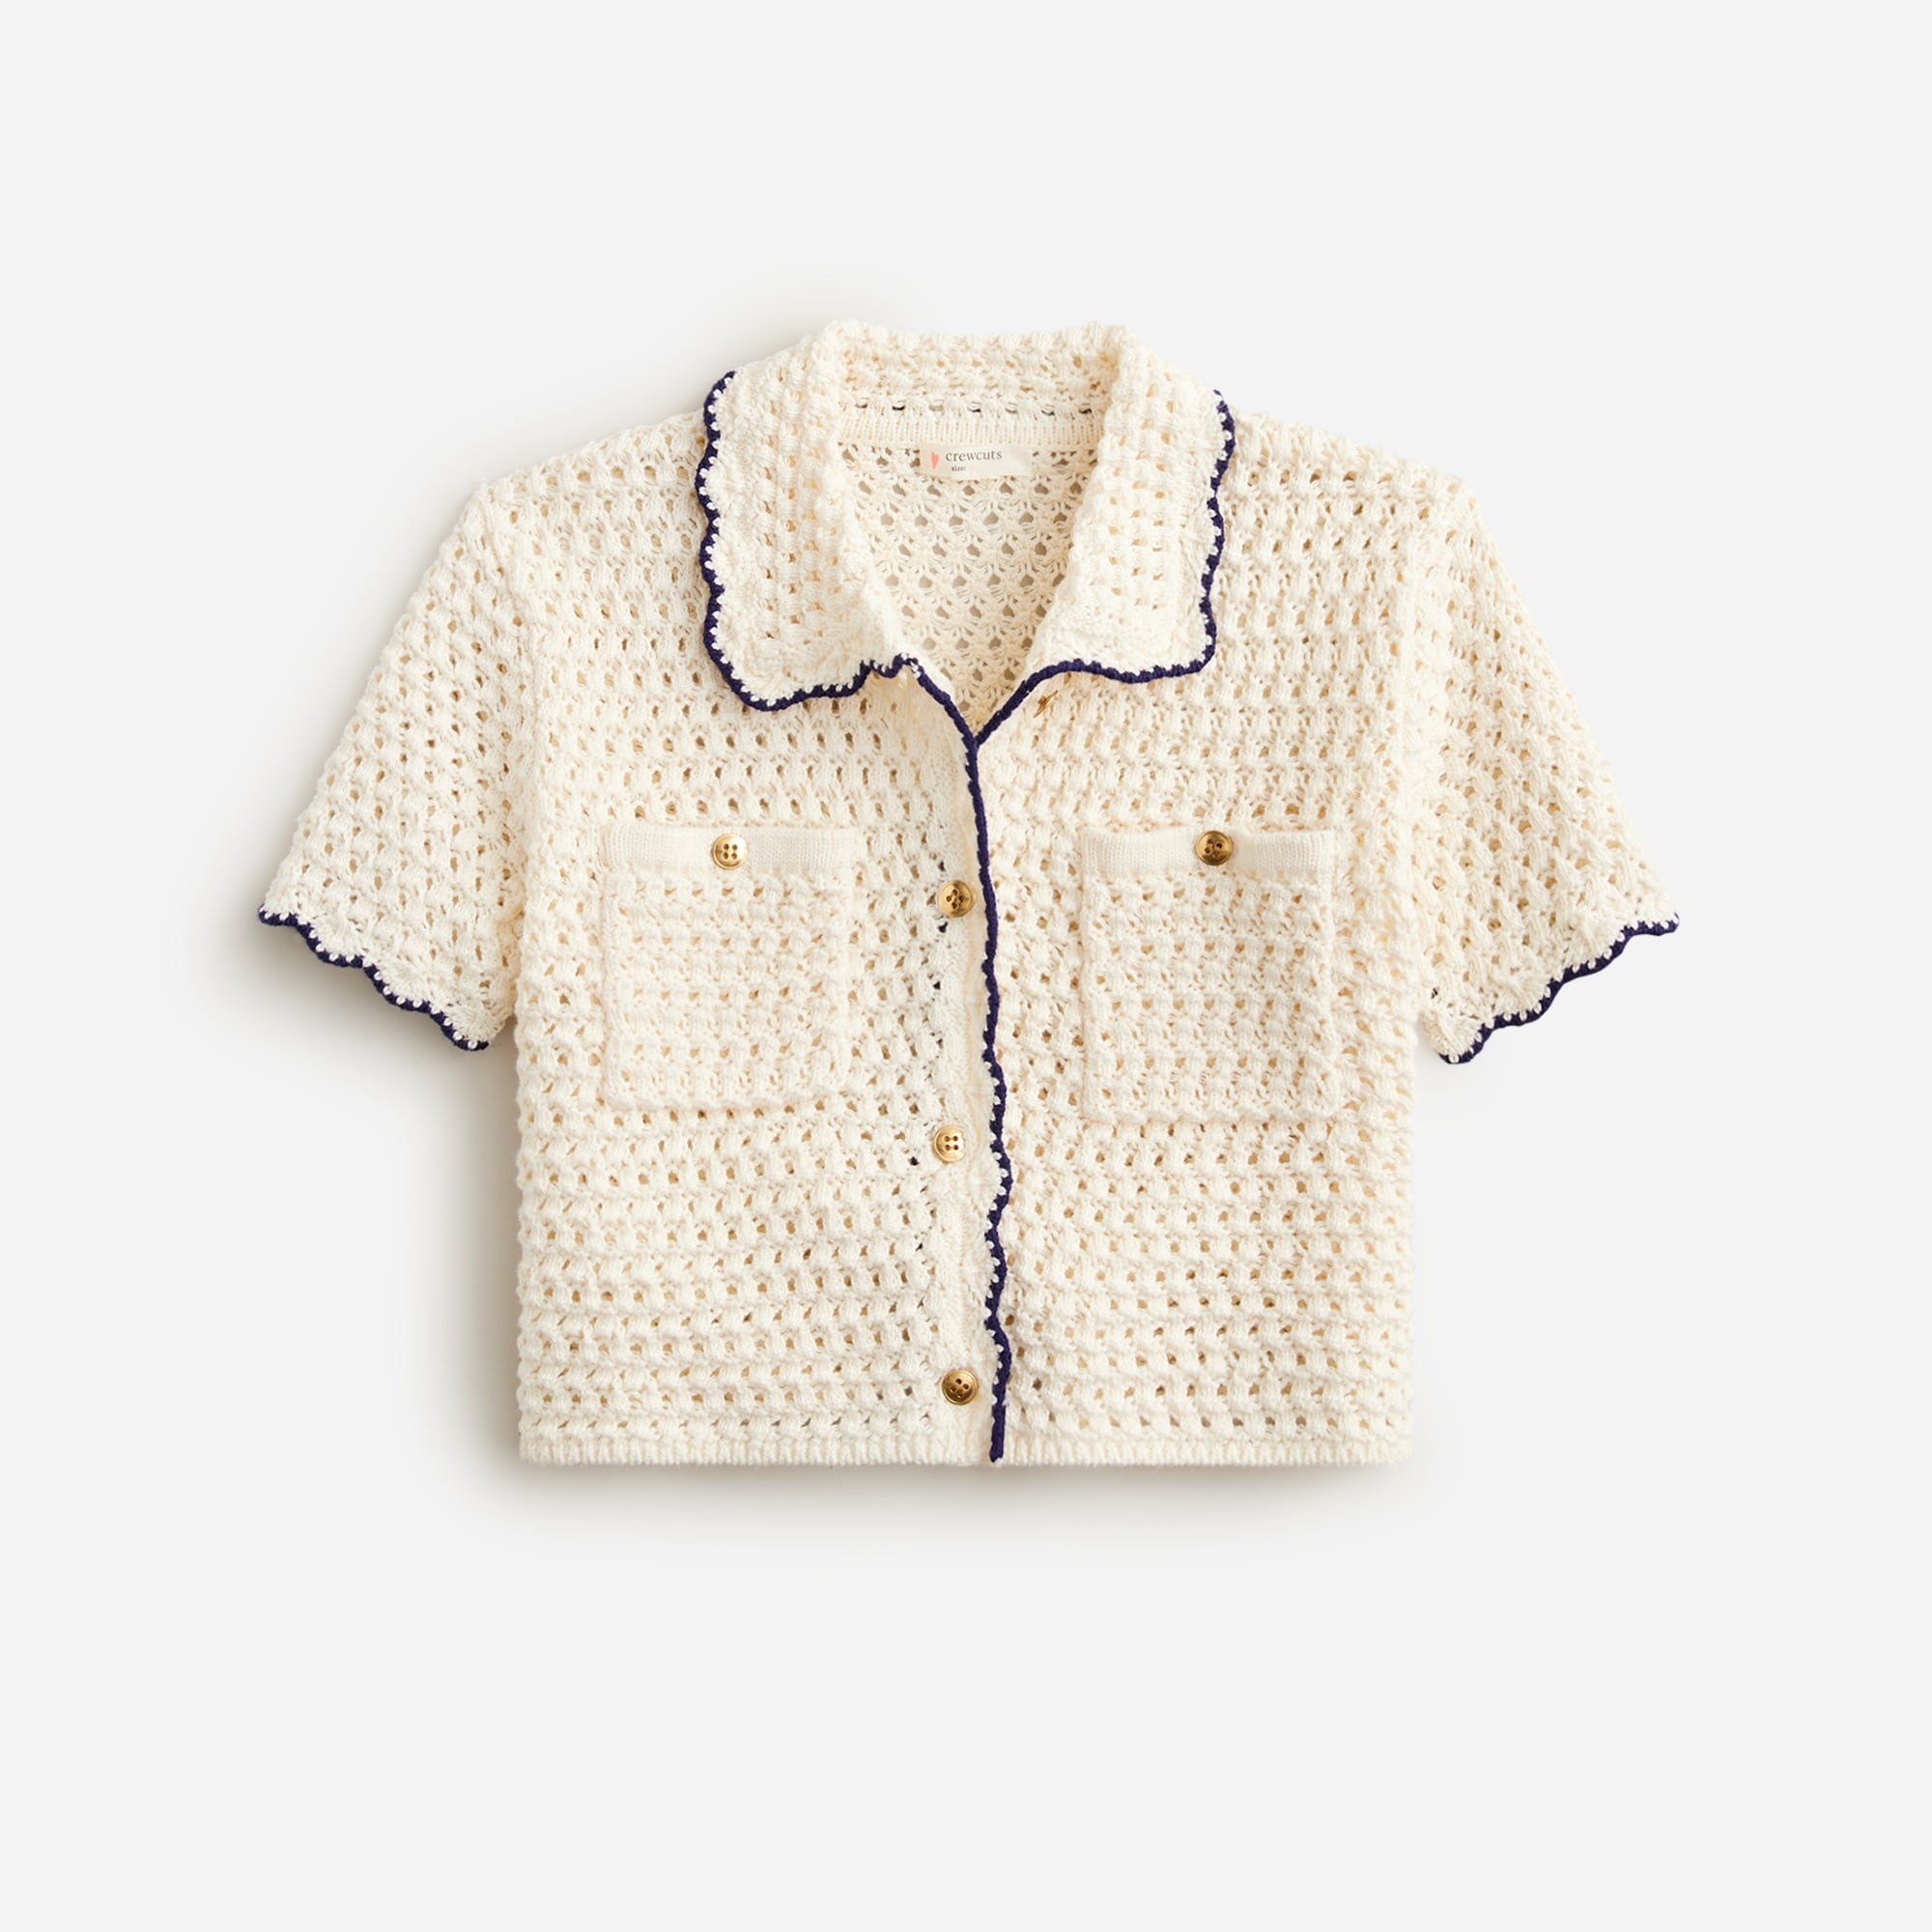 Jcrew Girls crochet button-up shirt